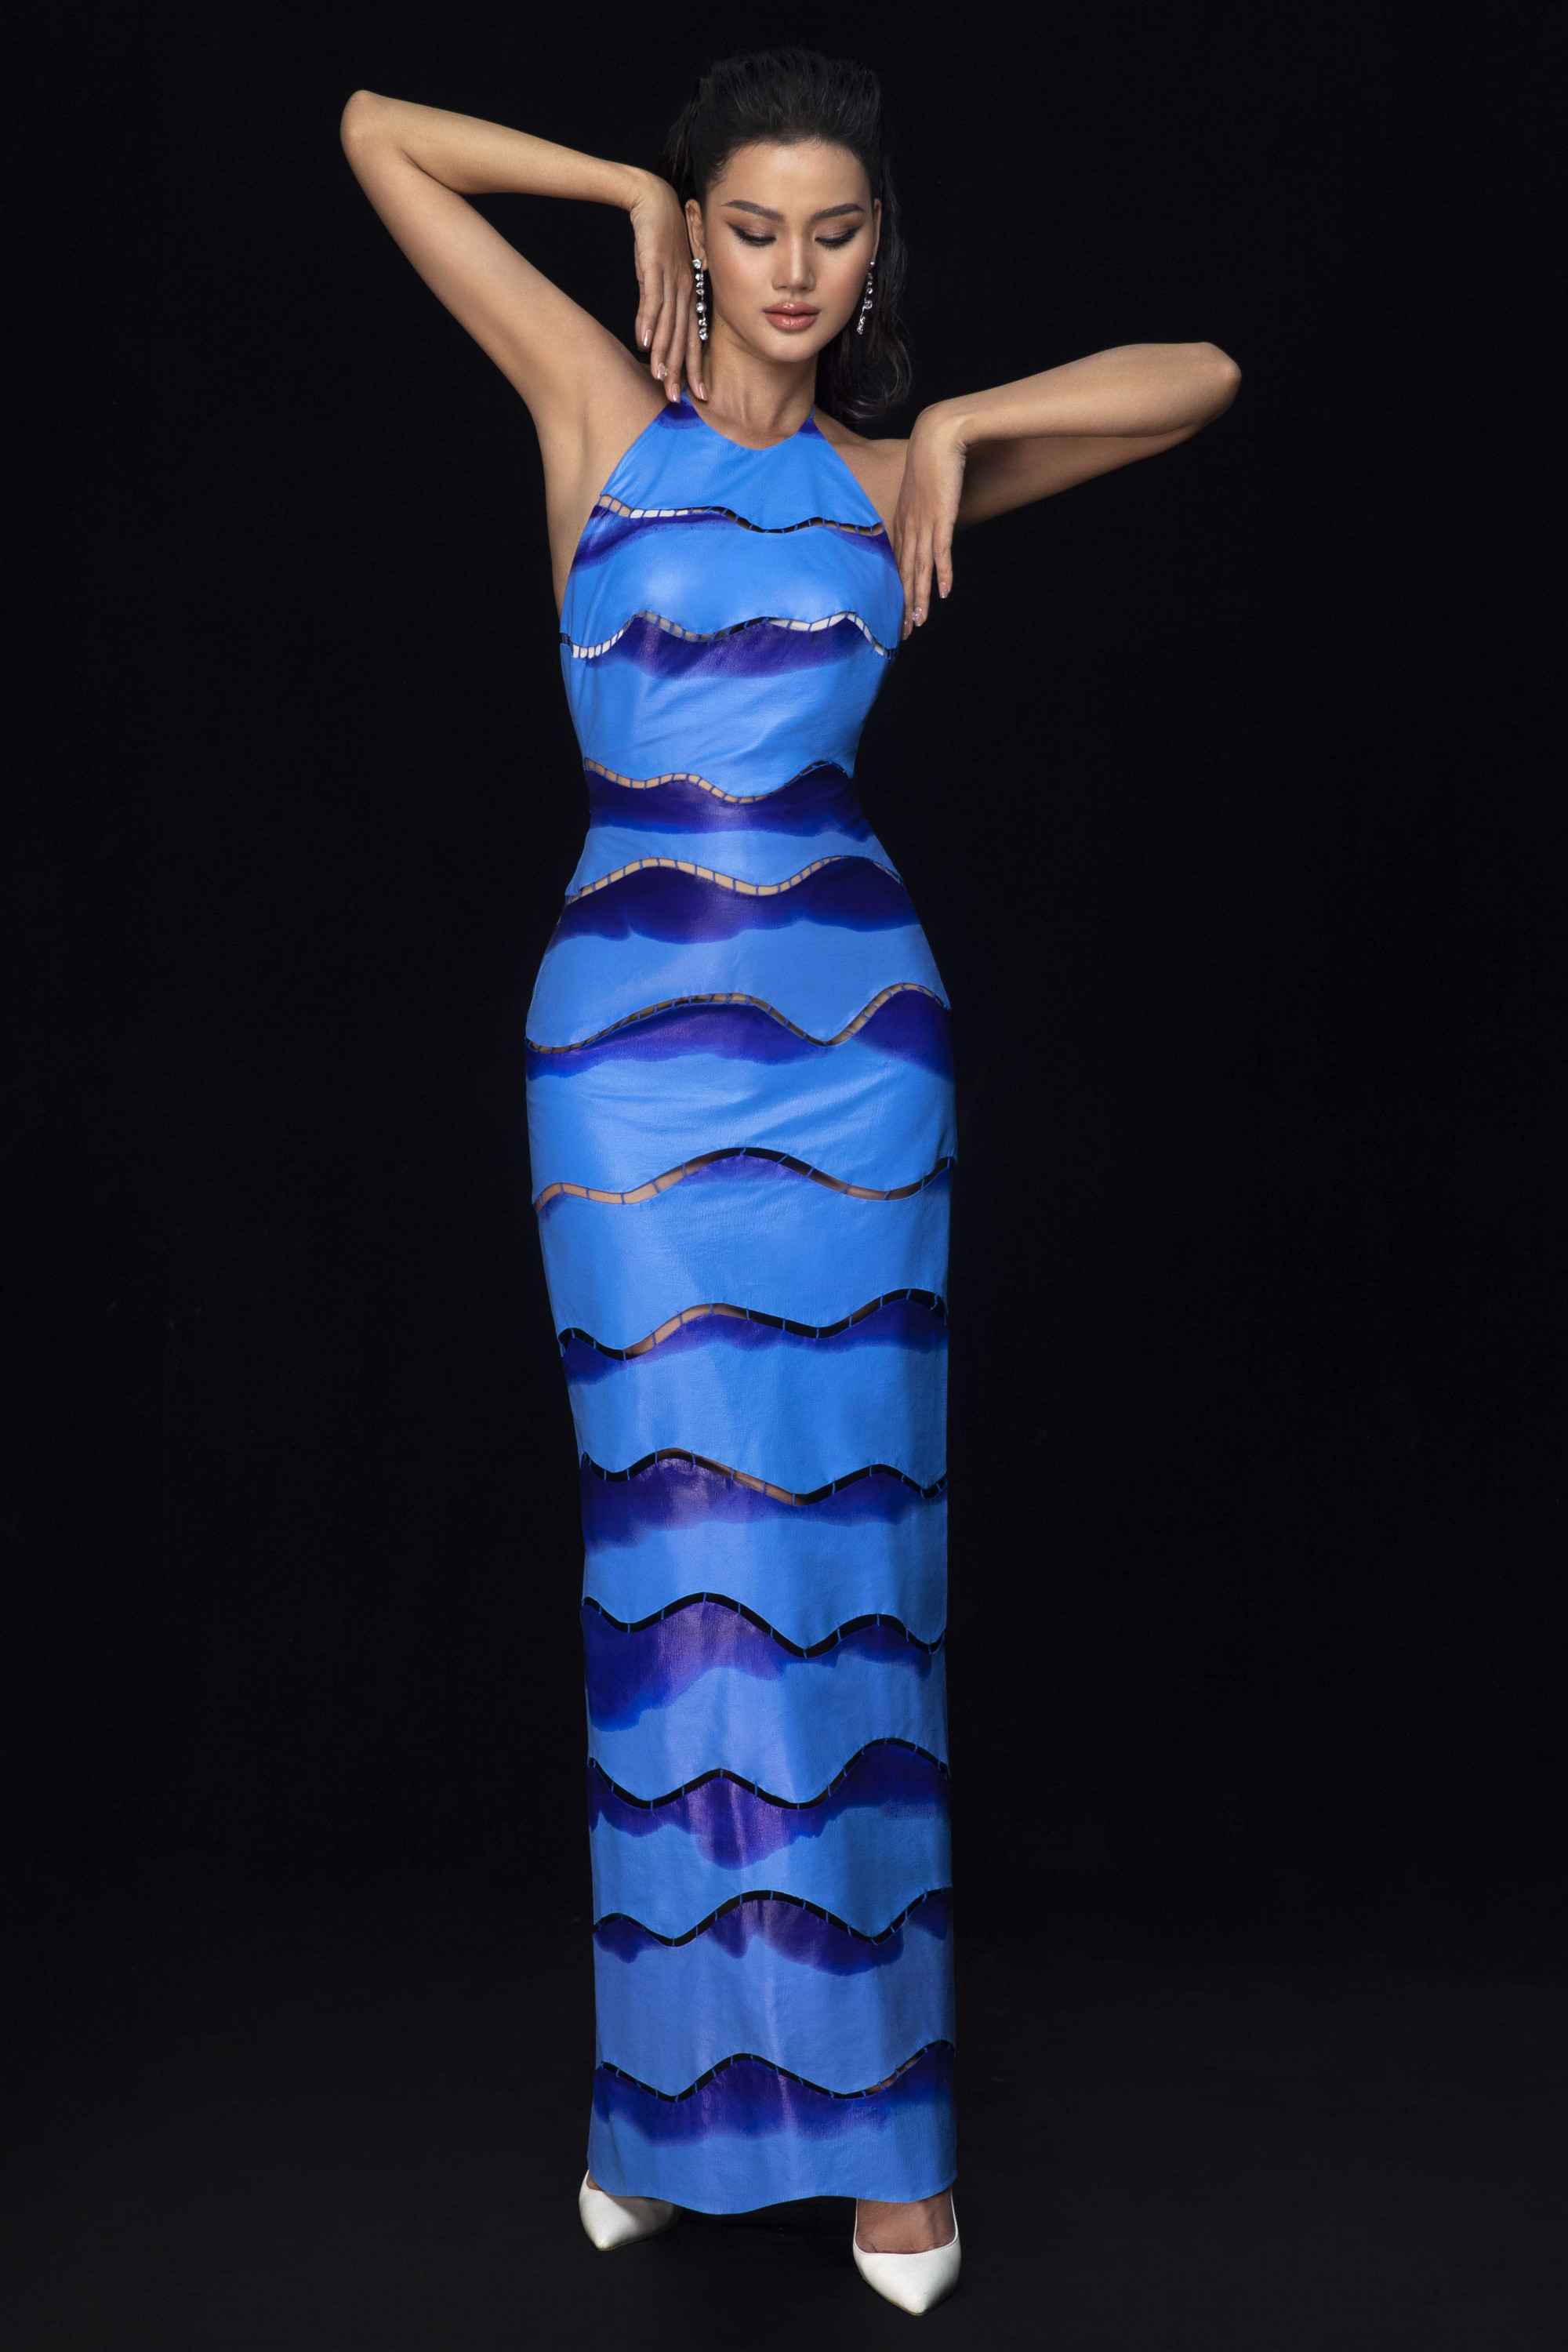 Màu sắc thực tế của chiếc váy trên là màu xanh biển kết hợp với màu xanh đậm 